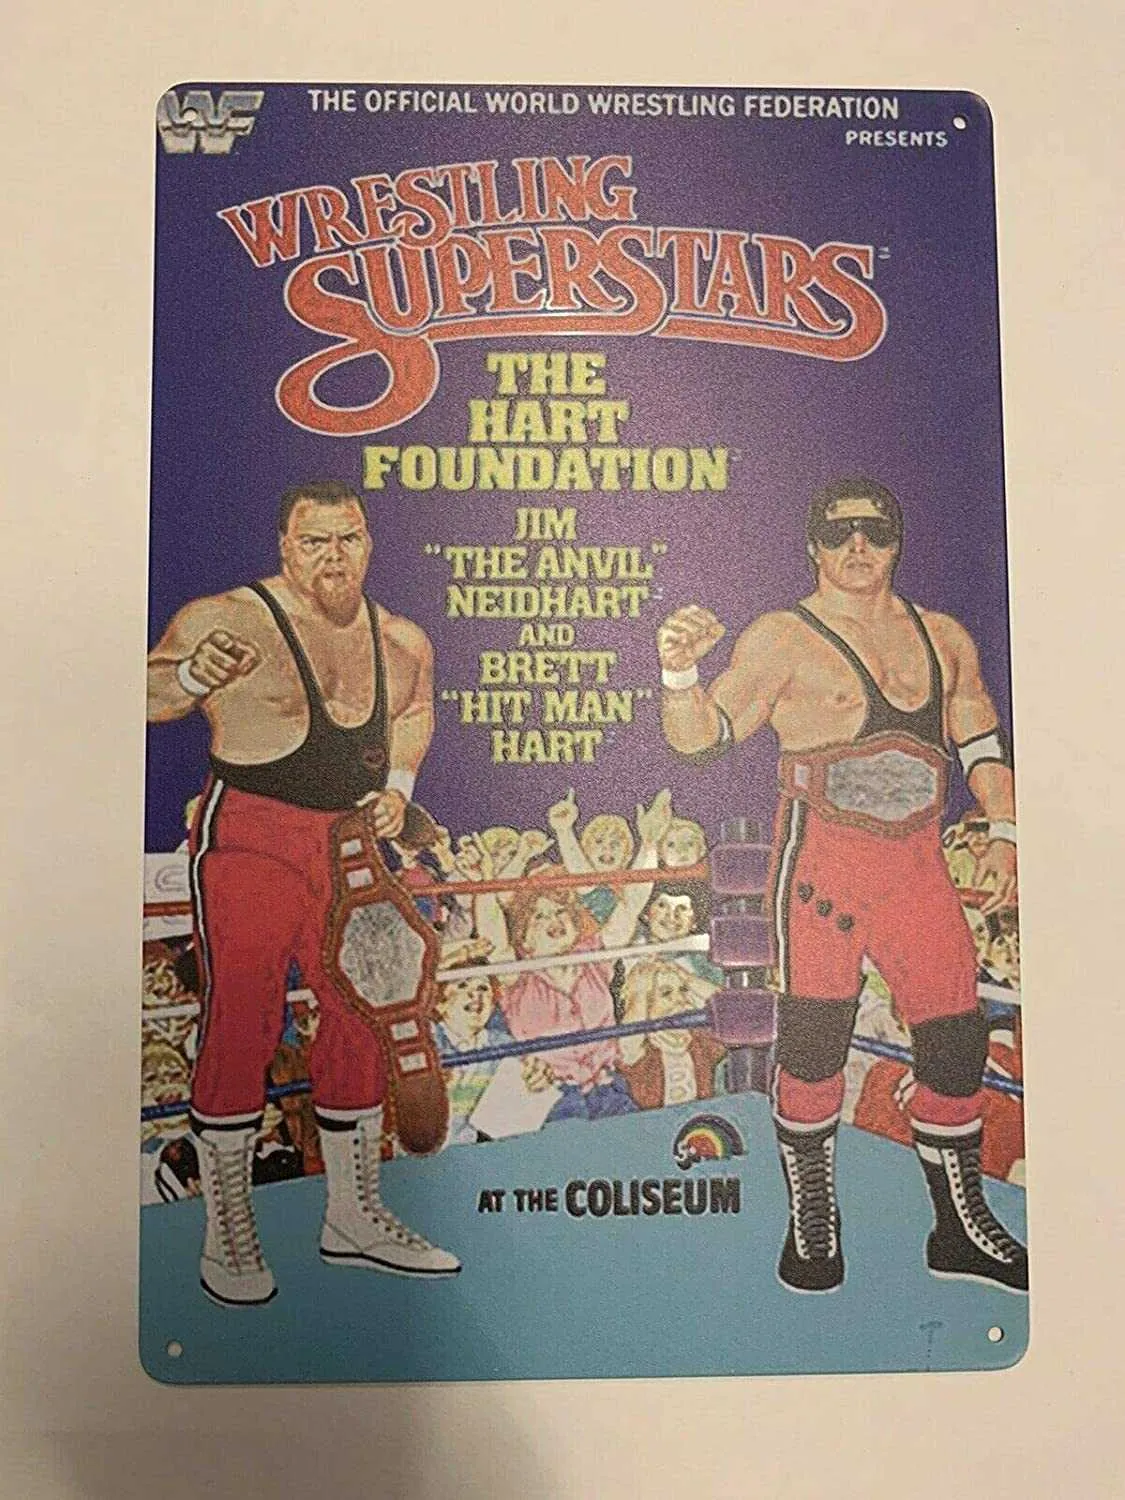 2021 금속 표지판 브렛 하트 재단 WWF LJN 포스터 타인 엘리트 Mattel 그림 로트 20 × 30cm 주석 포스터 향수 주석 부호